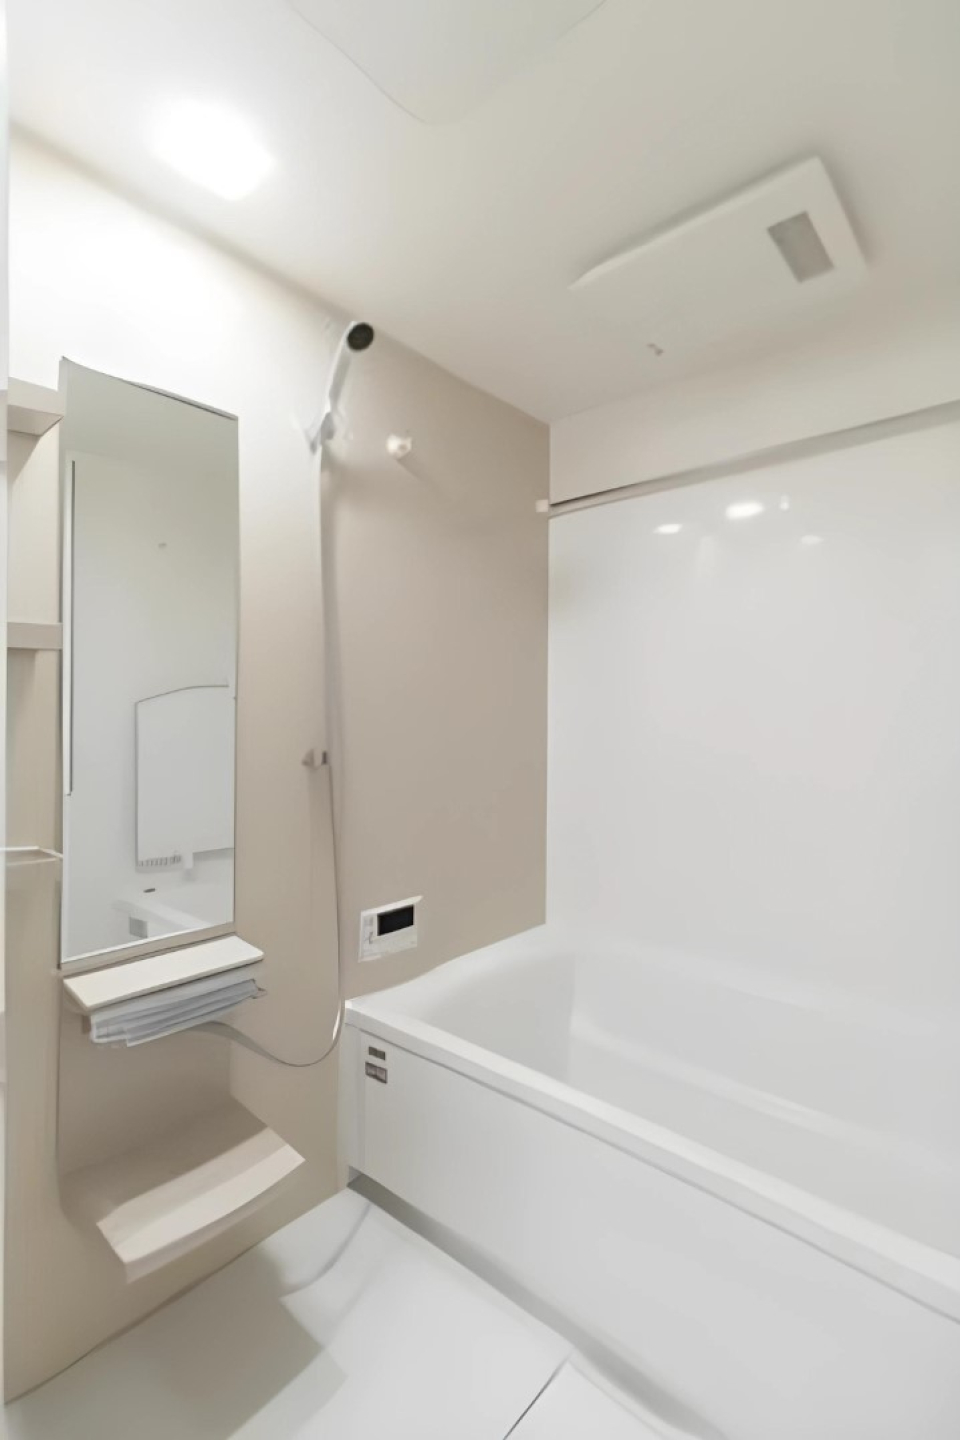 浴室は白でまとめられてすっきりとした印象です。※写真は同タイプ住戸です。